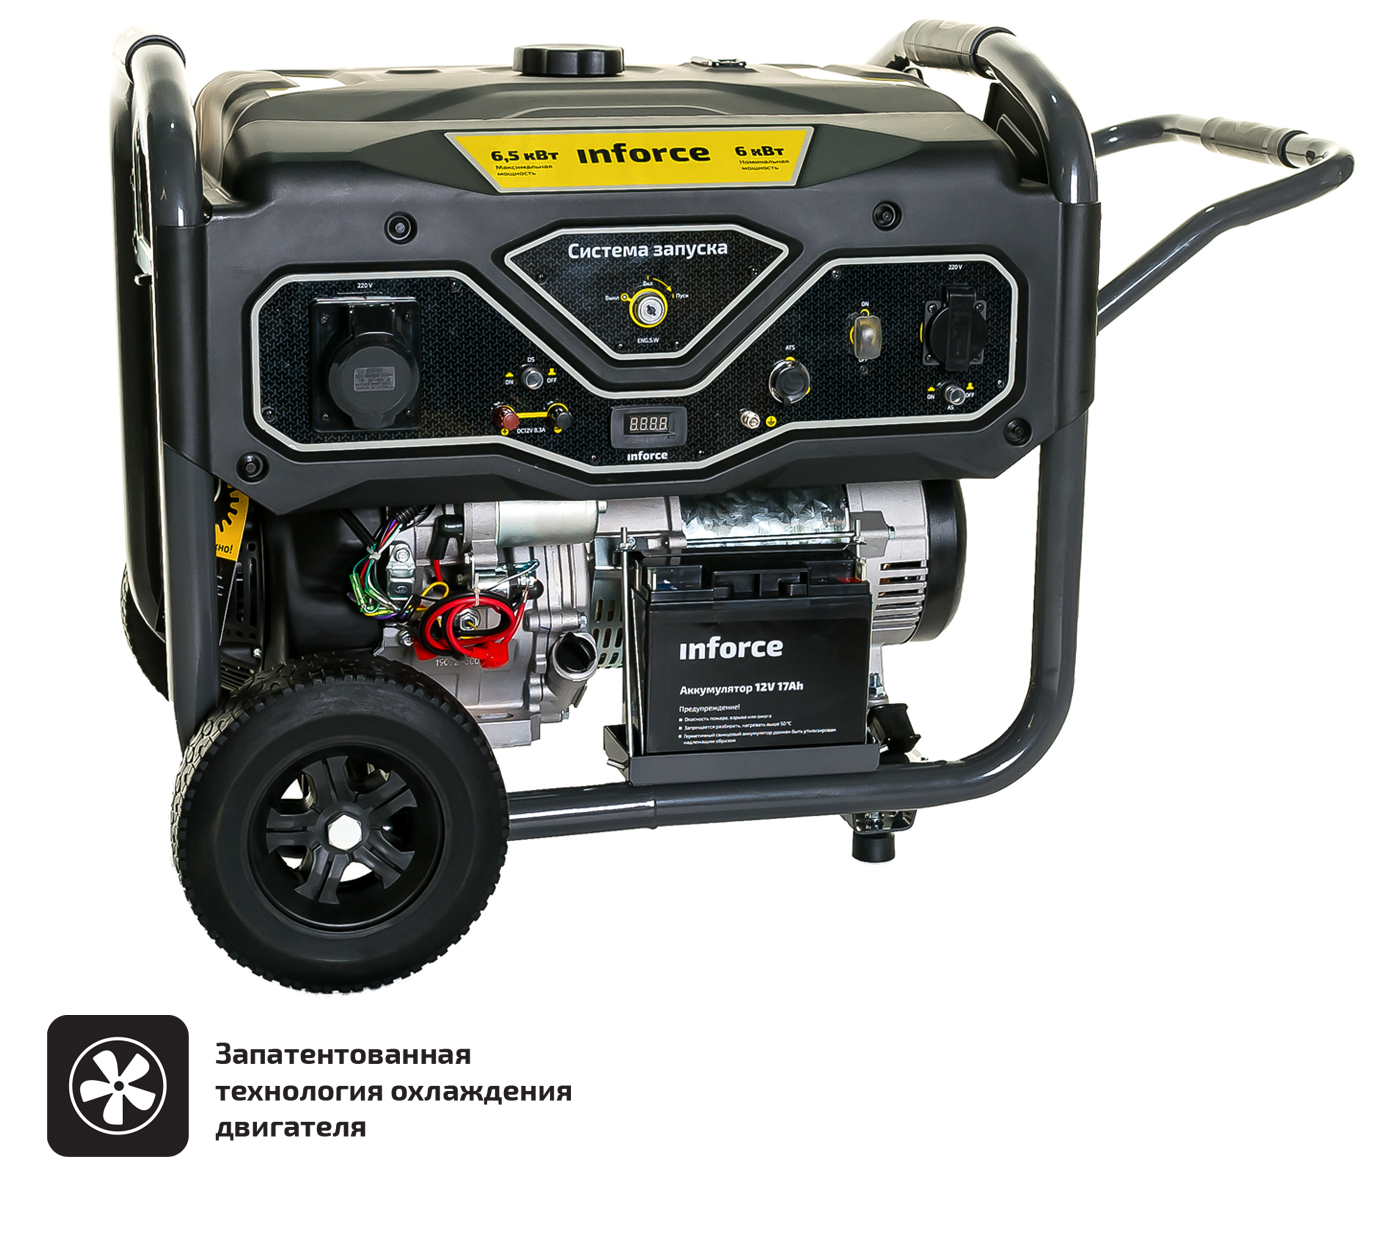 Бензиновый генератор с возможностью подключения блока автоматики Inforce GL 6500 04-03-15 бензиновый генератор carver ppg 6500 220 12 в 5 5квт [01 020 00018]